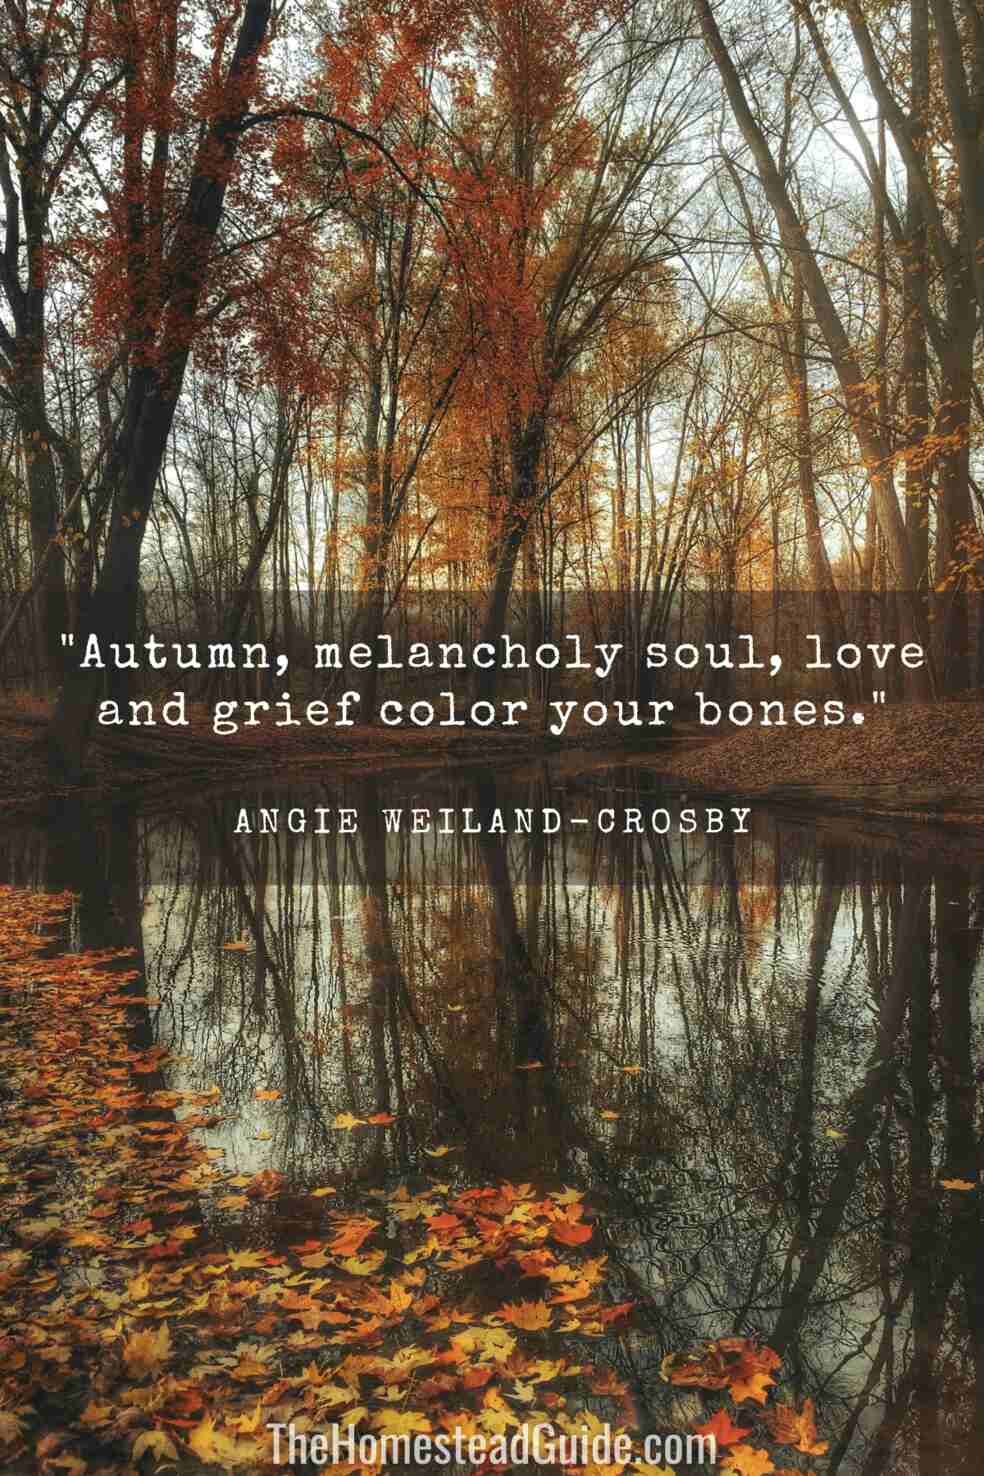 Autumn, melancholy soul, love and grief color your bones. 